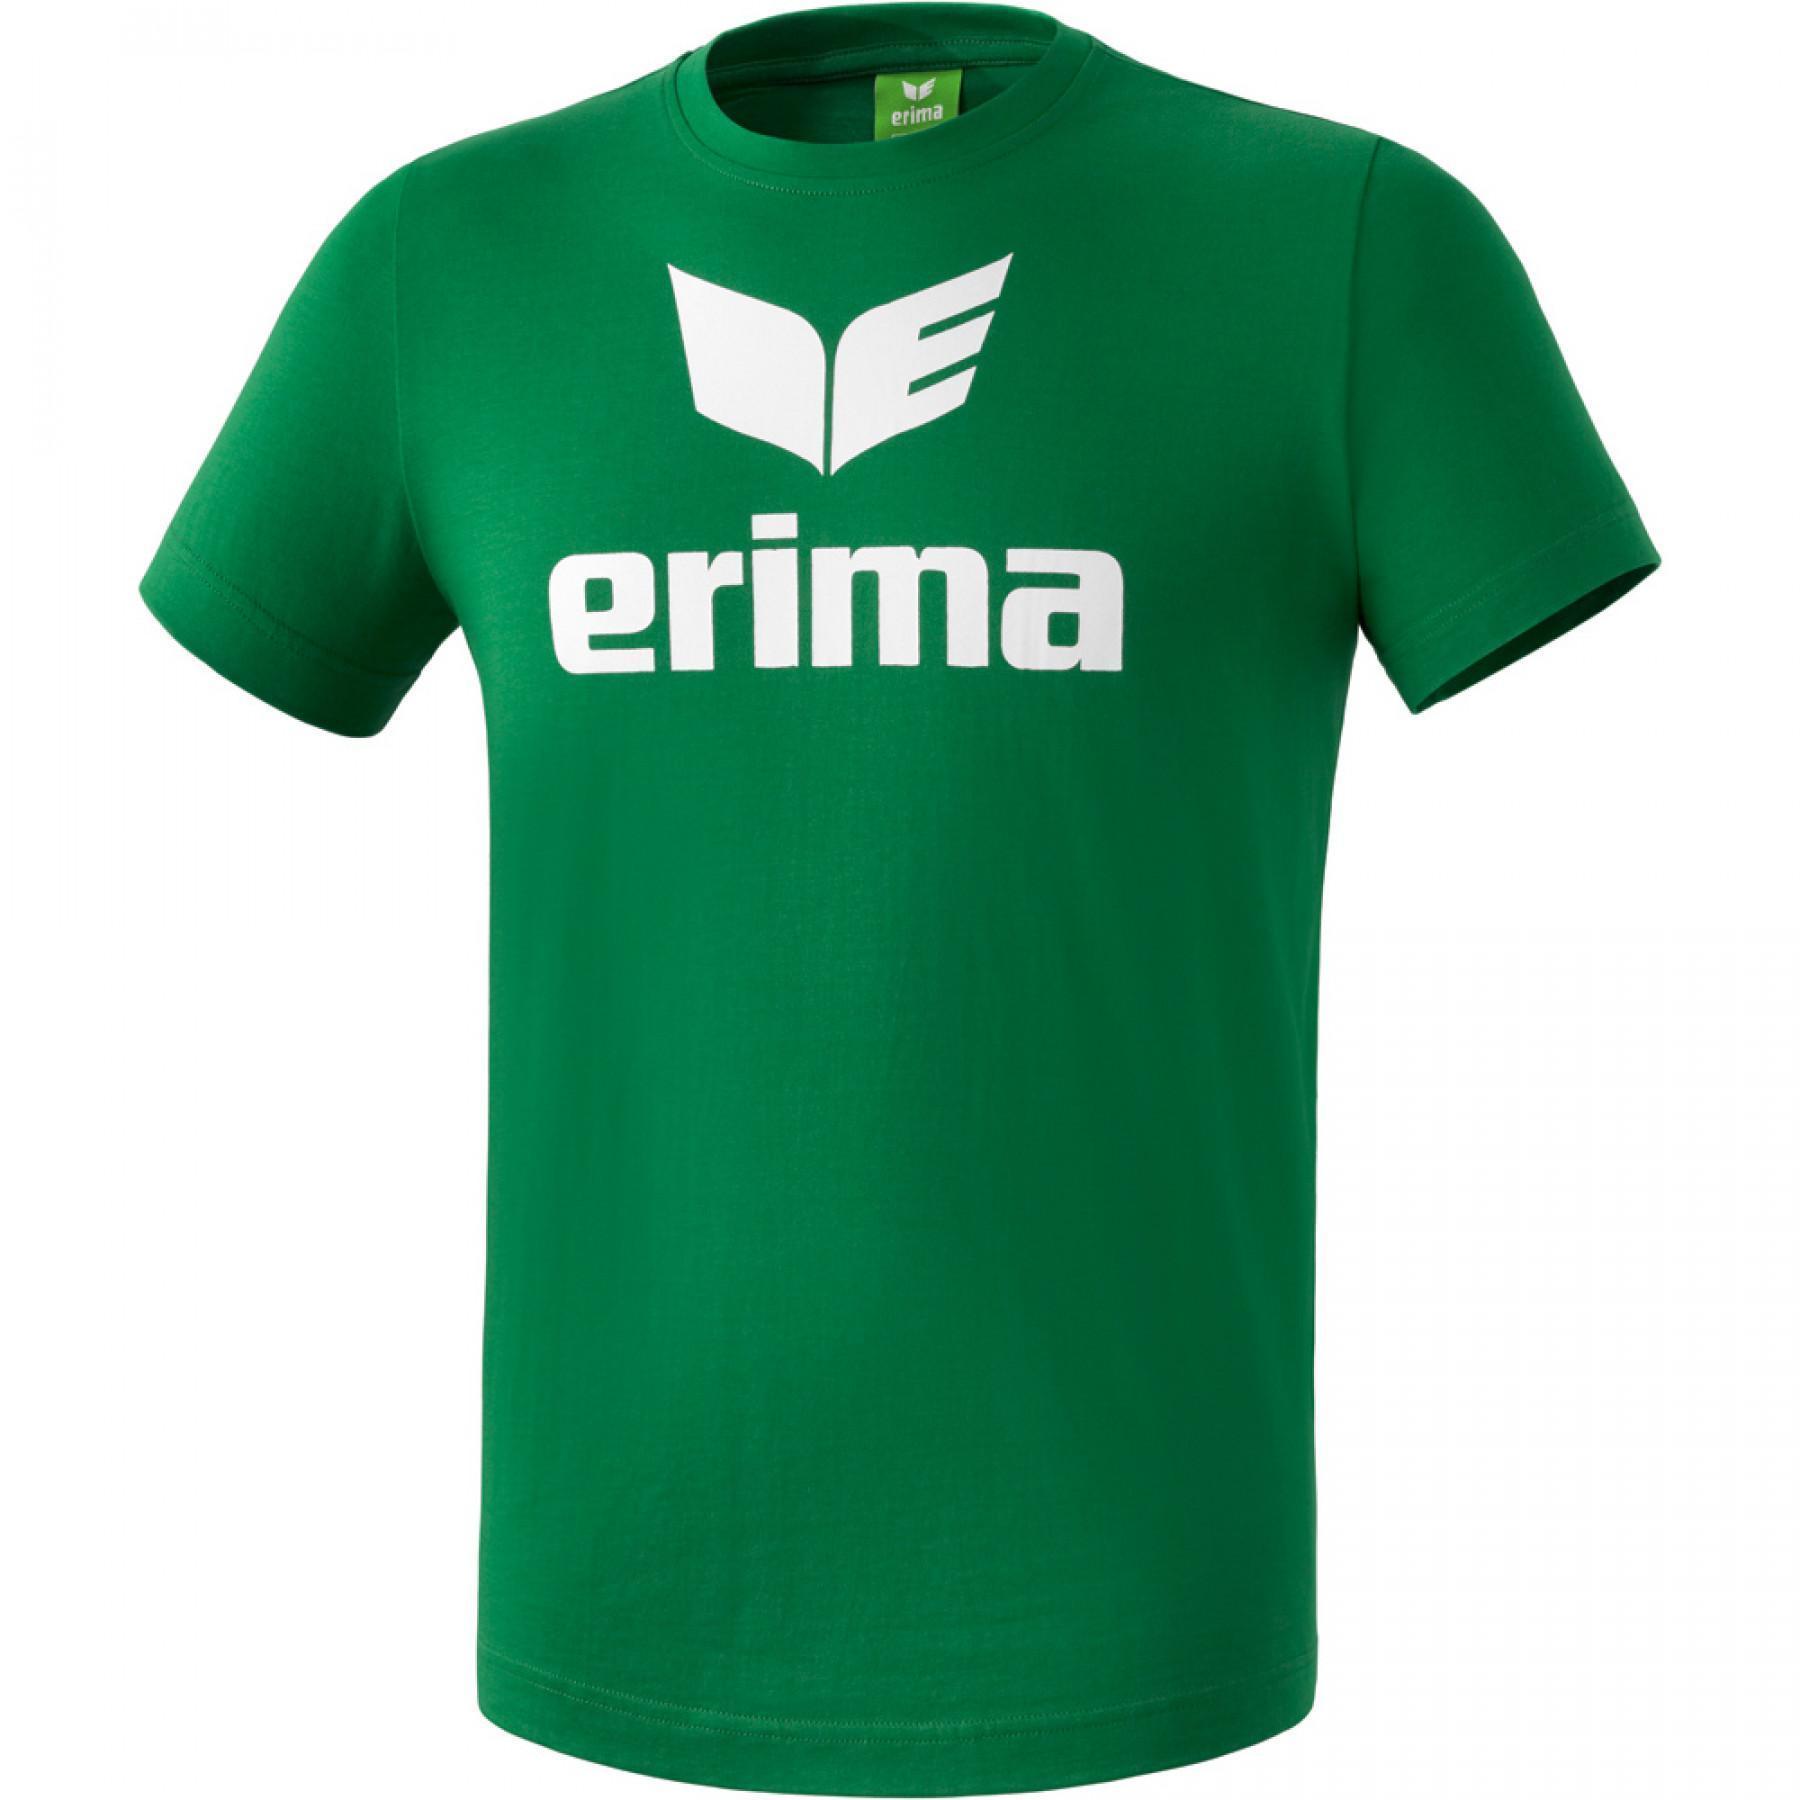 Maglietta per bambini Erima promo